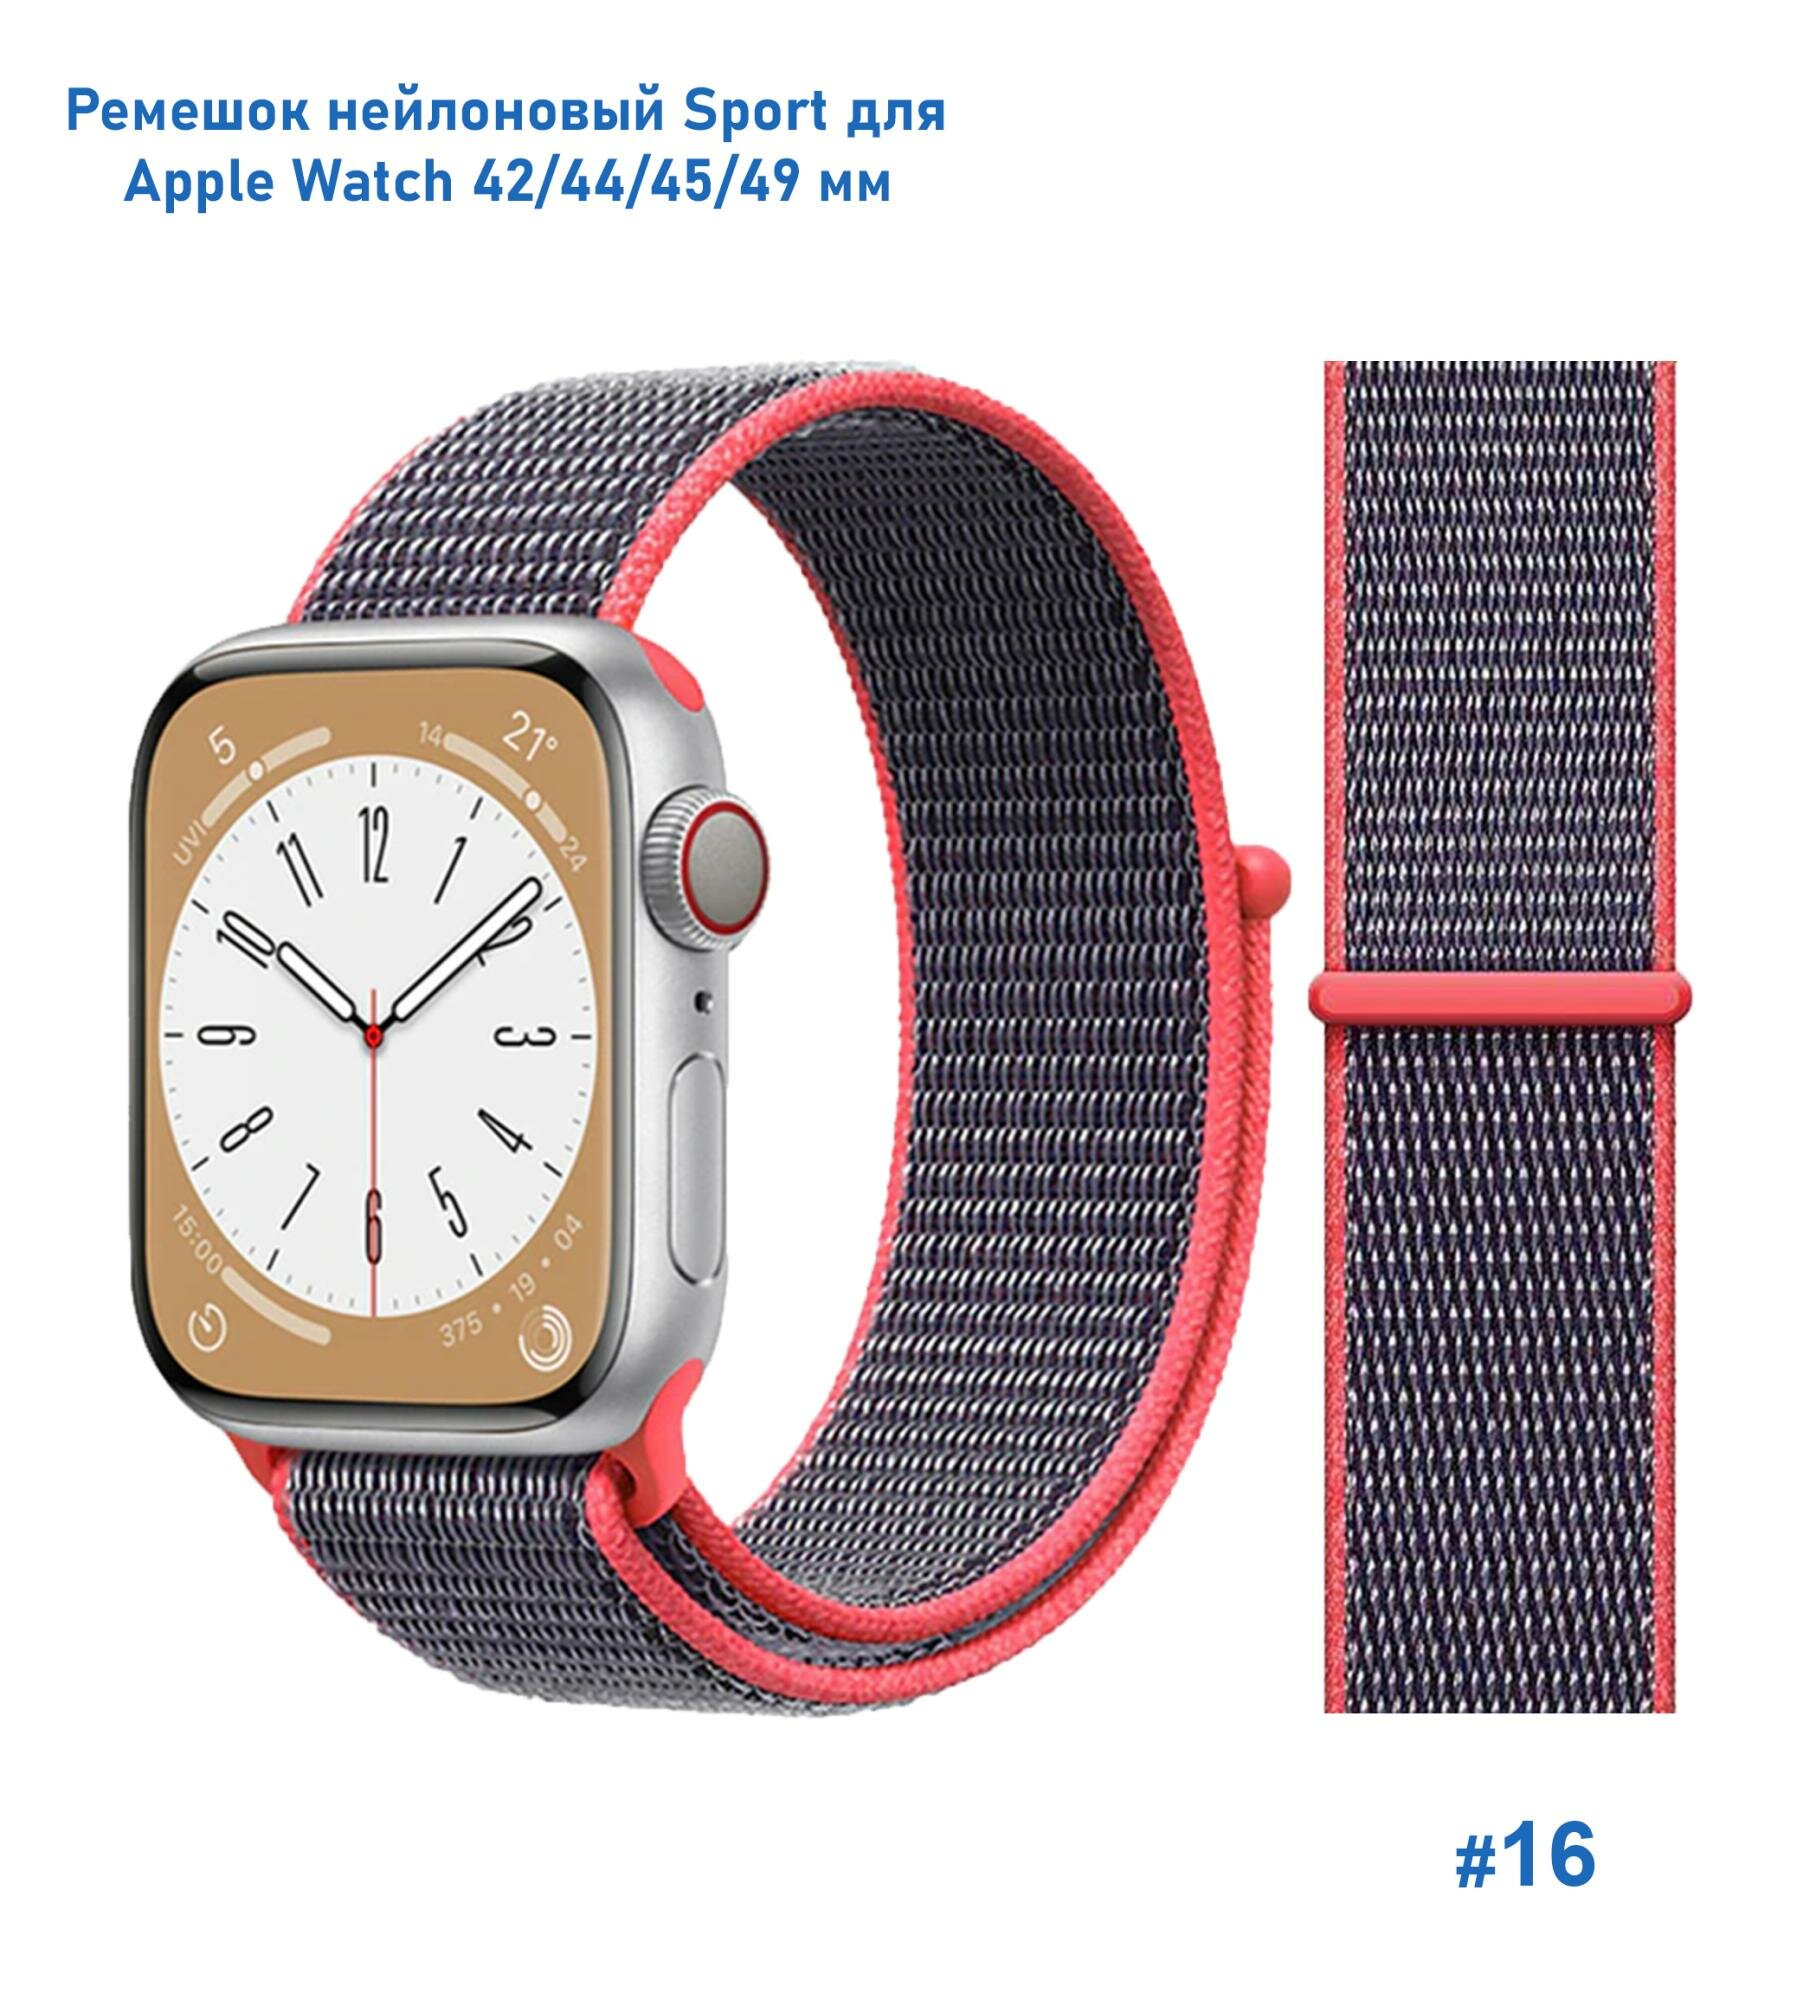 Ремешок нейлоновый Sport для Apple Watch 42/44/45/49 мм, на липучке, металлик+розовый (16)